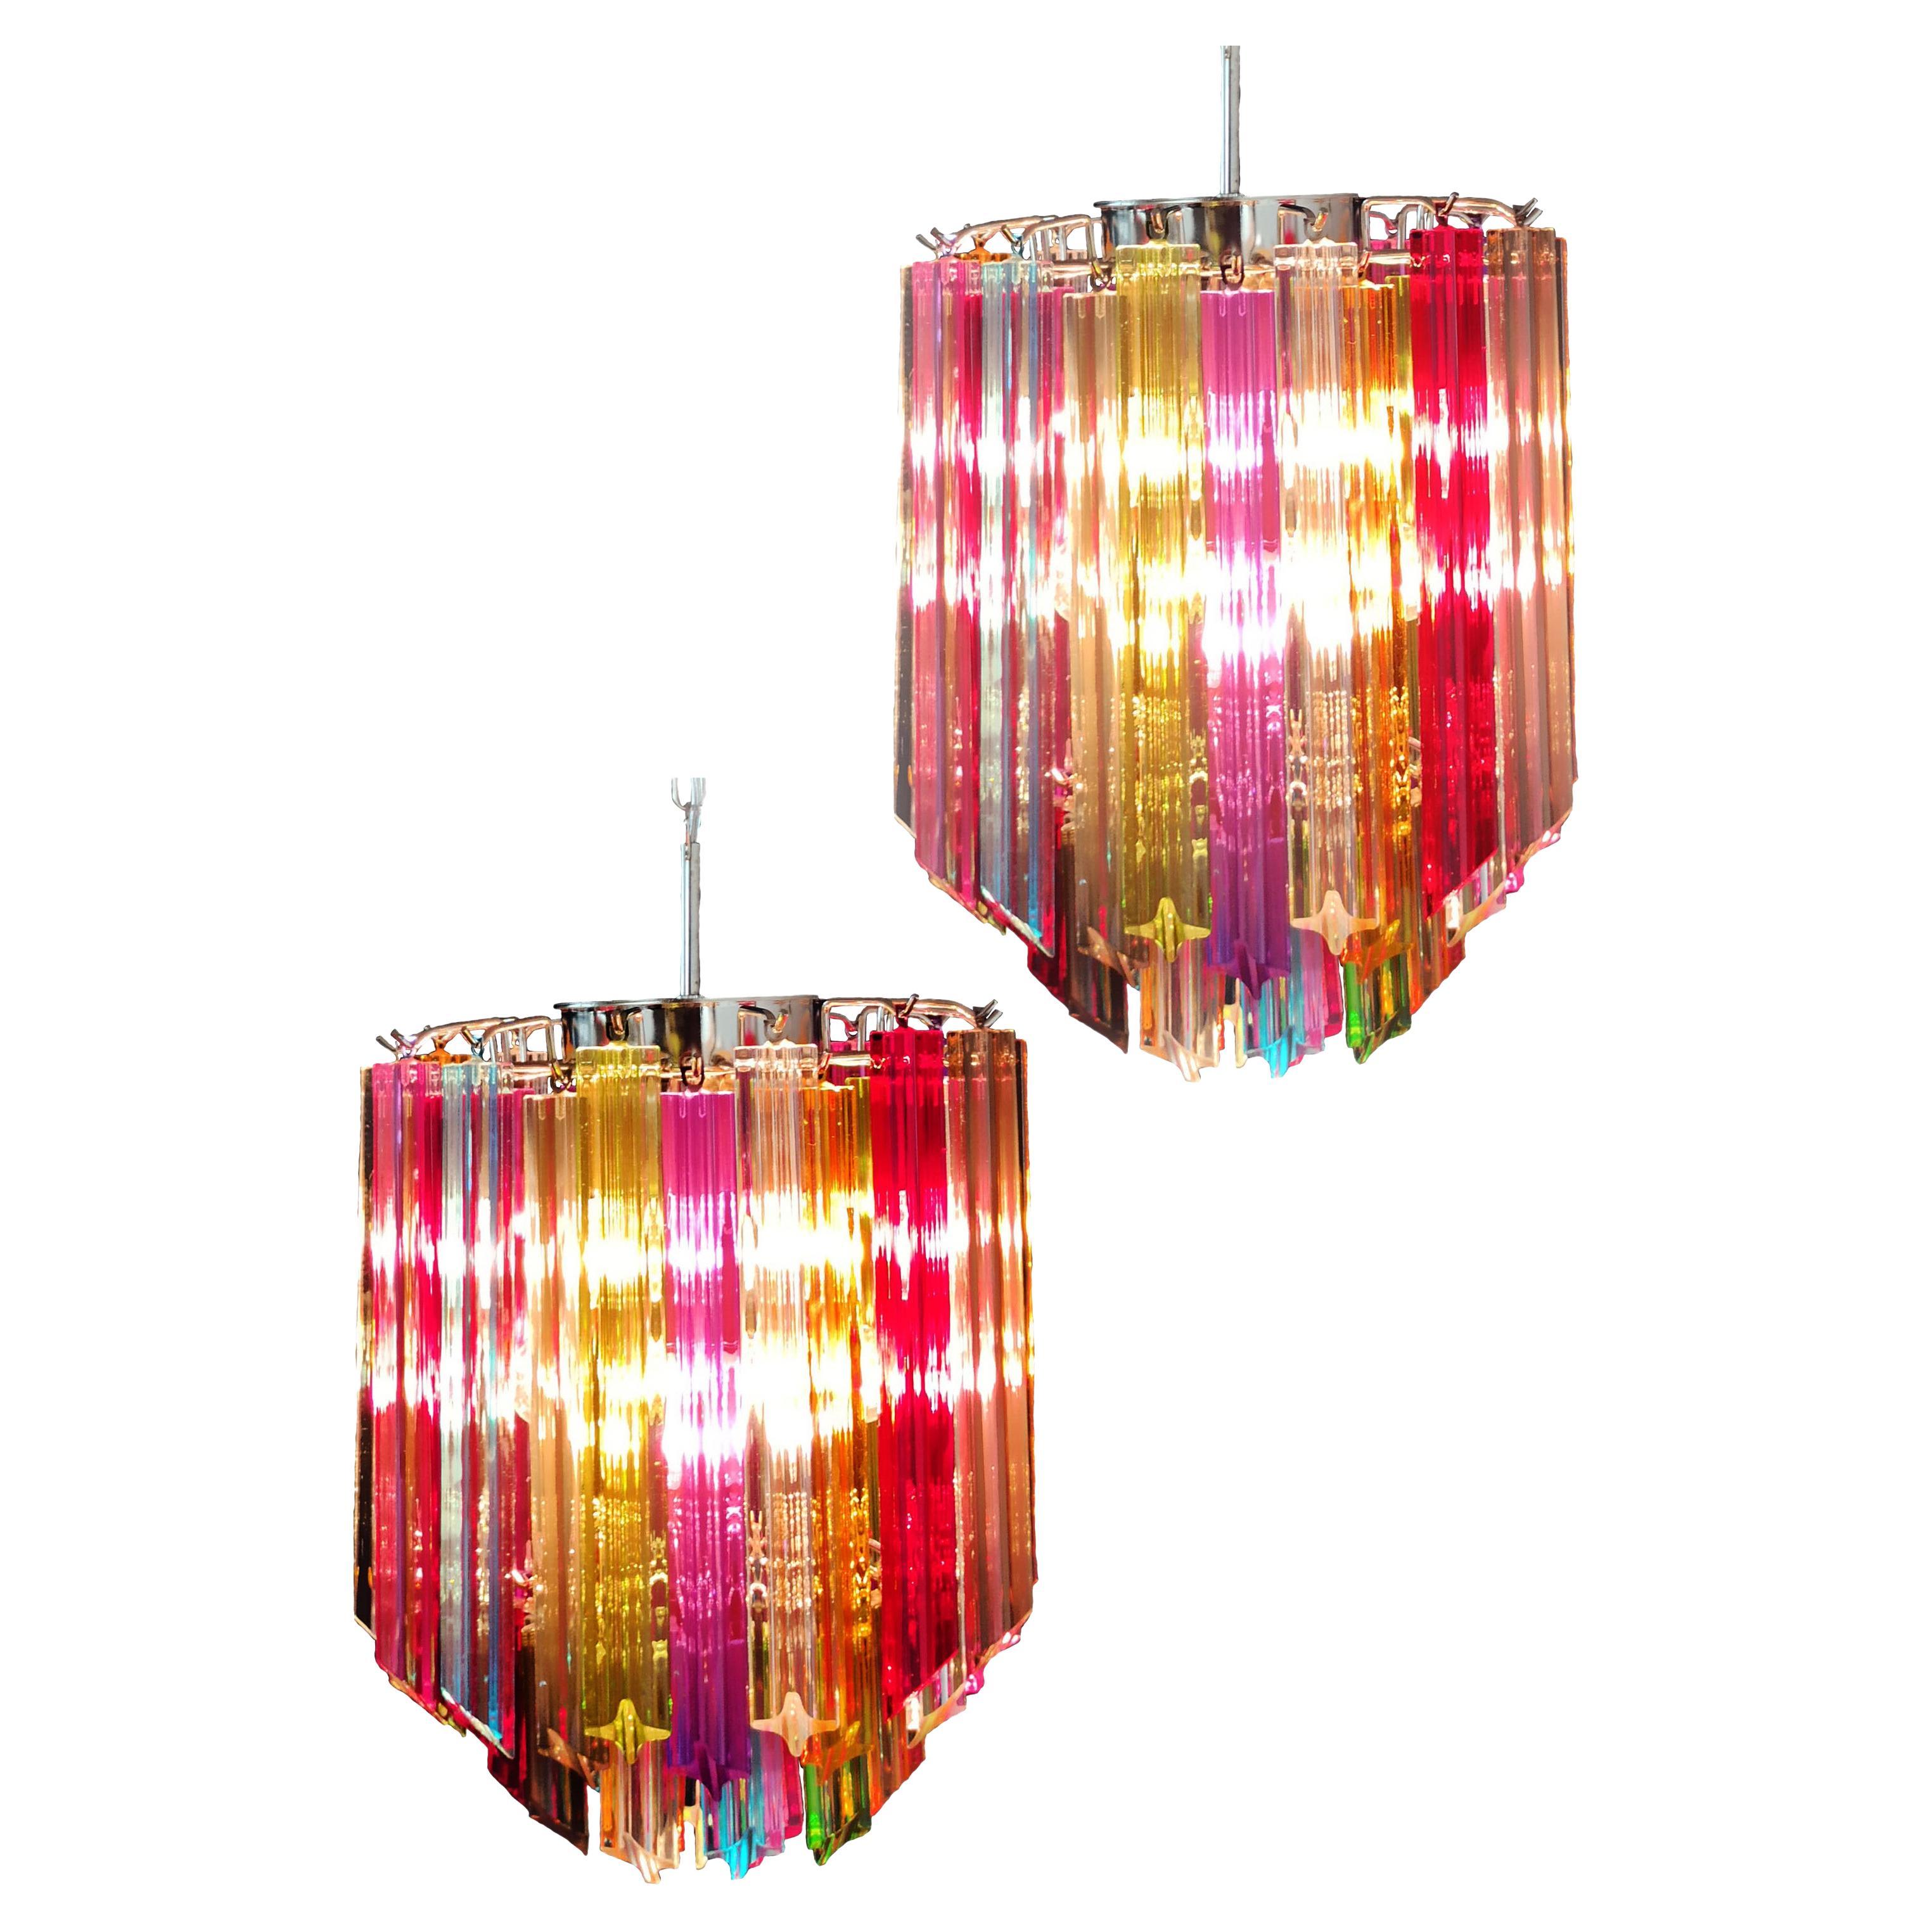 Original Quadriedri Murano chandeliers - 47 multicolored prisms